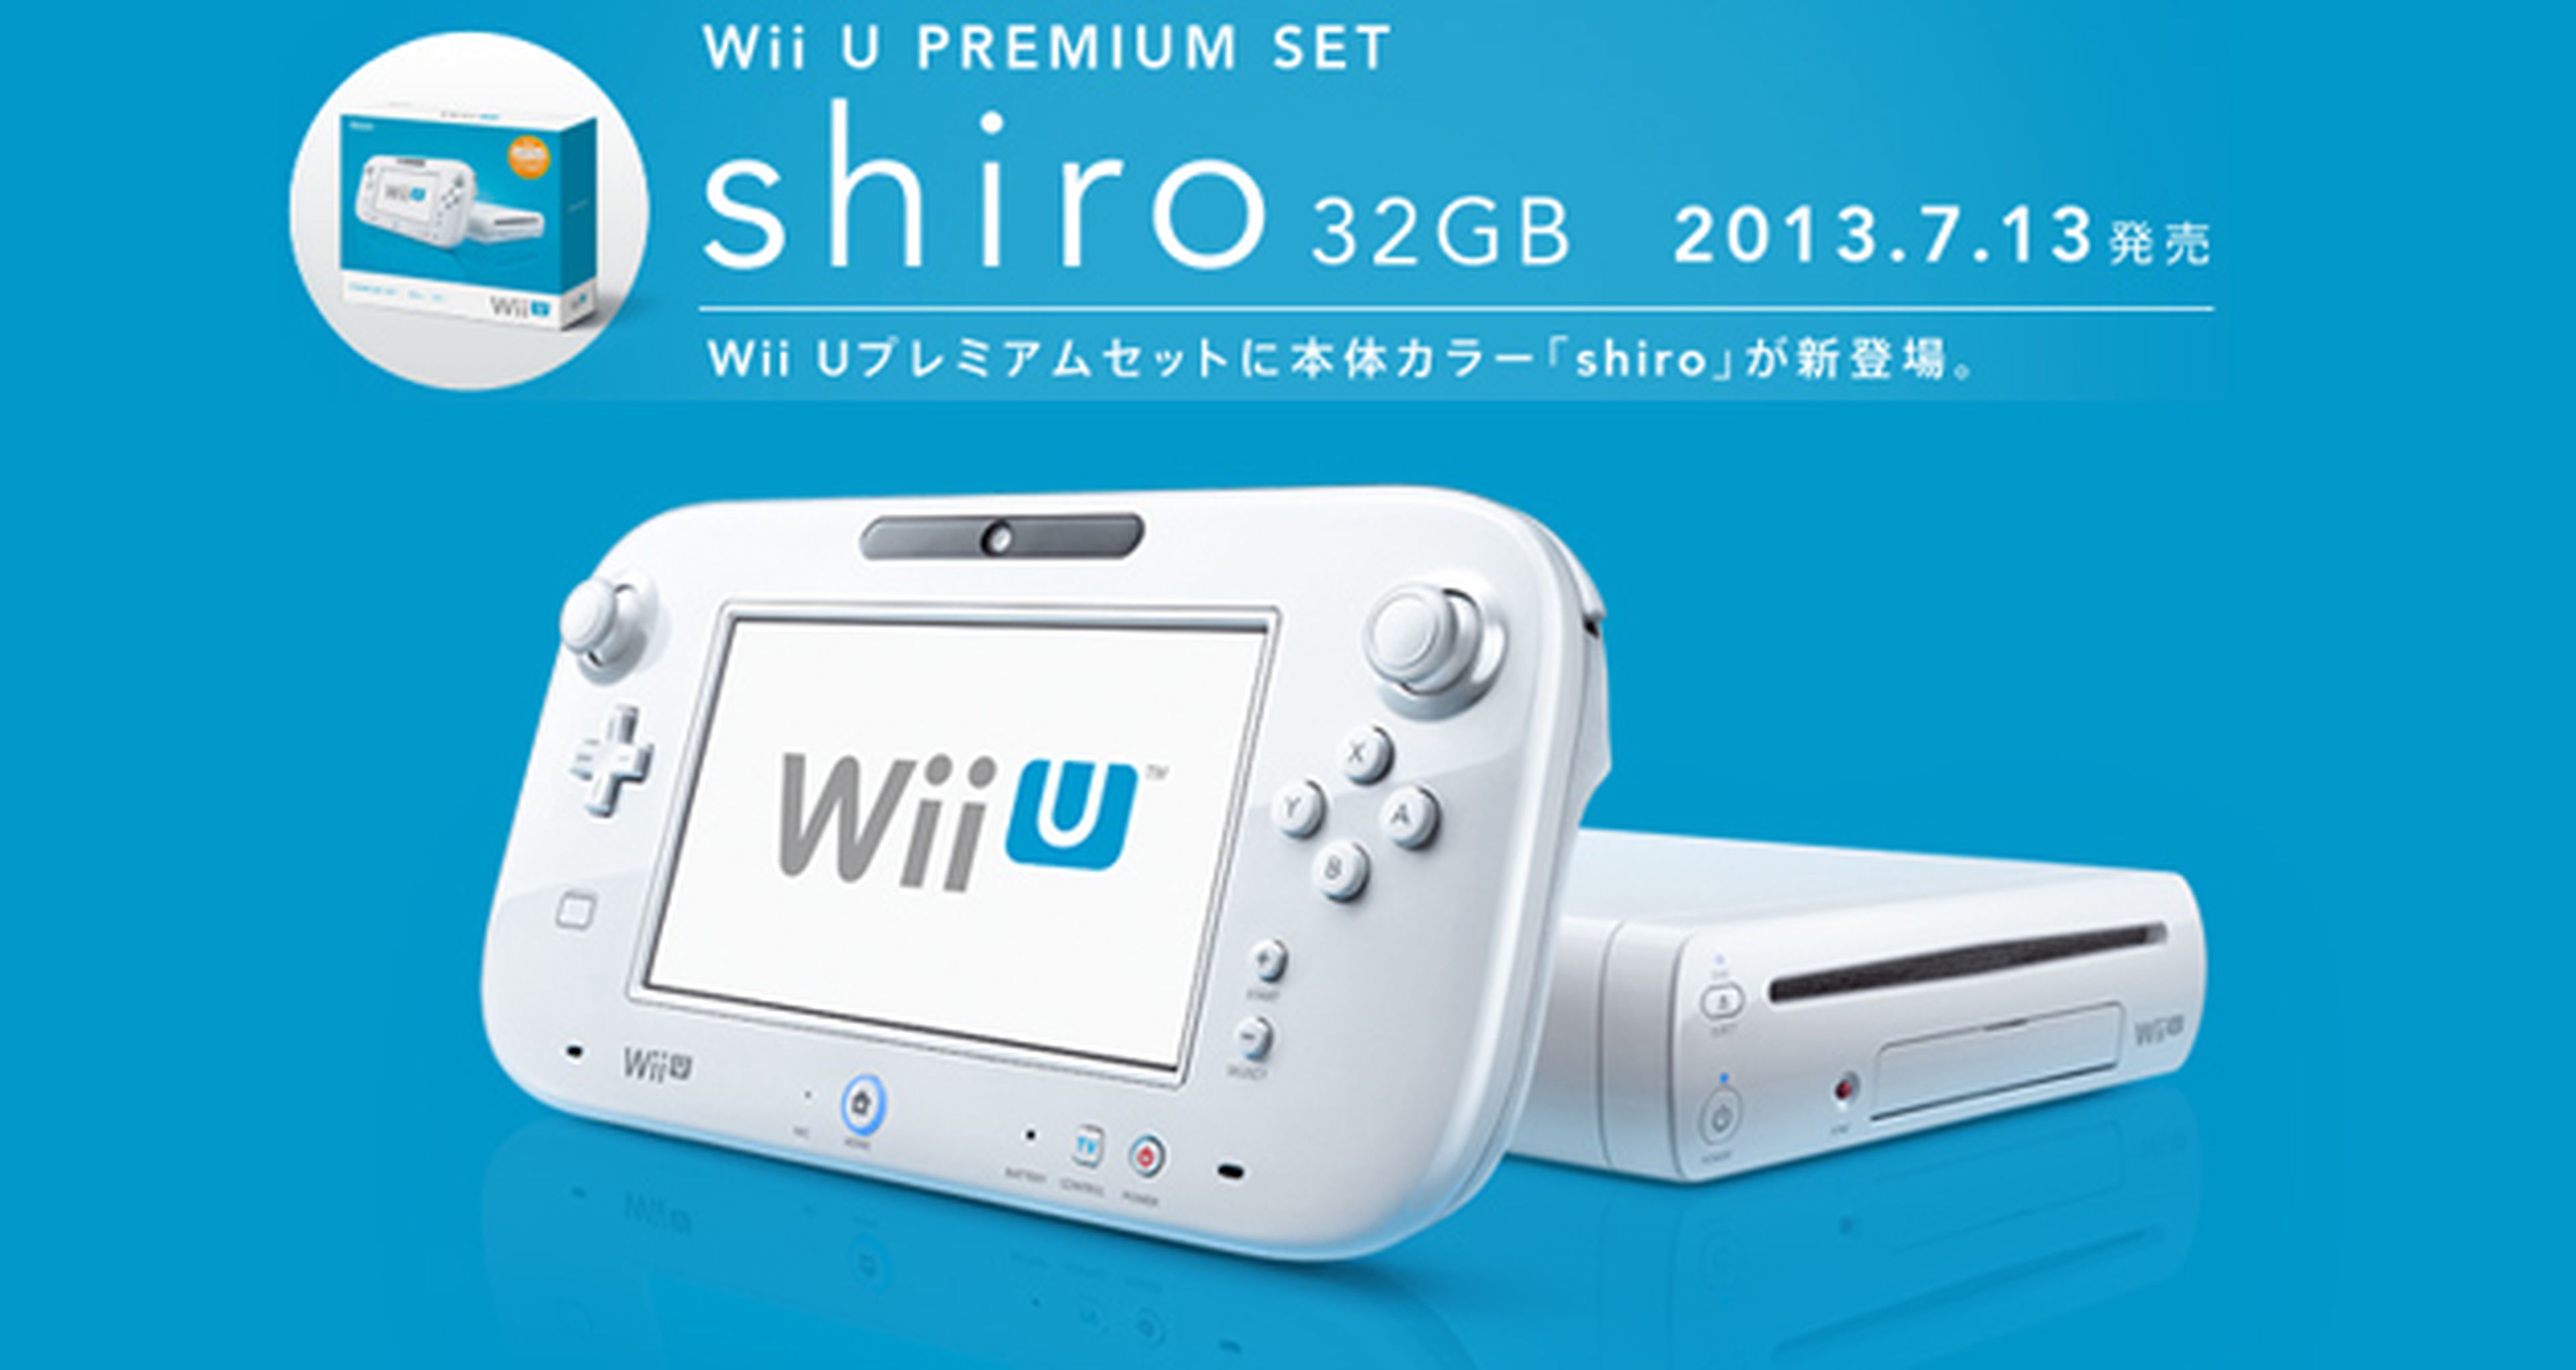 Consola Nintendo Wii U Deluxe Set color Negro, 32 GB de memoria